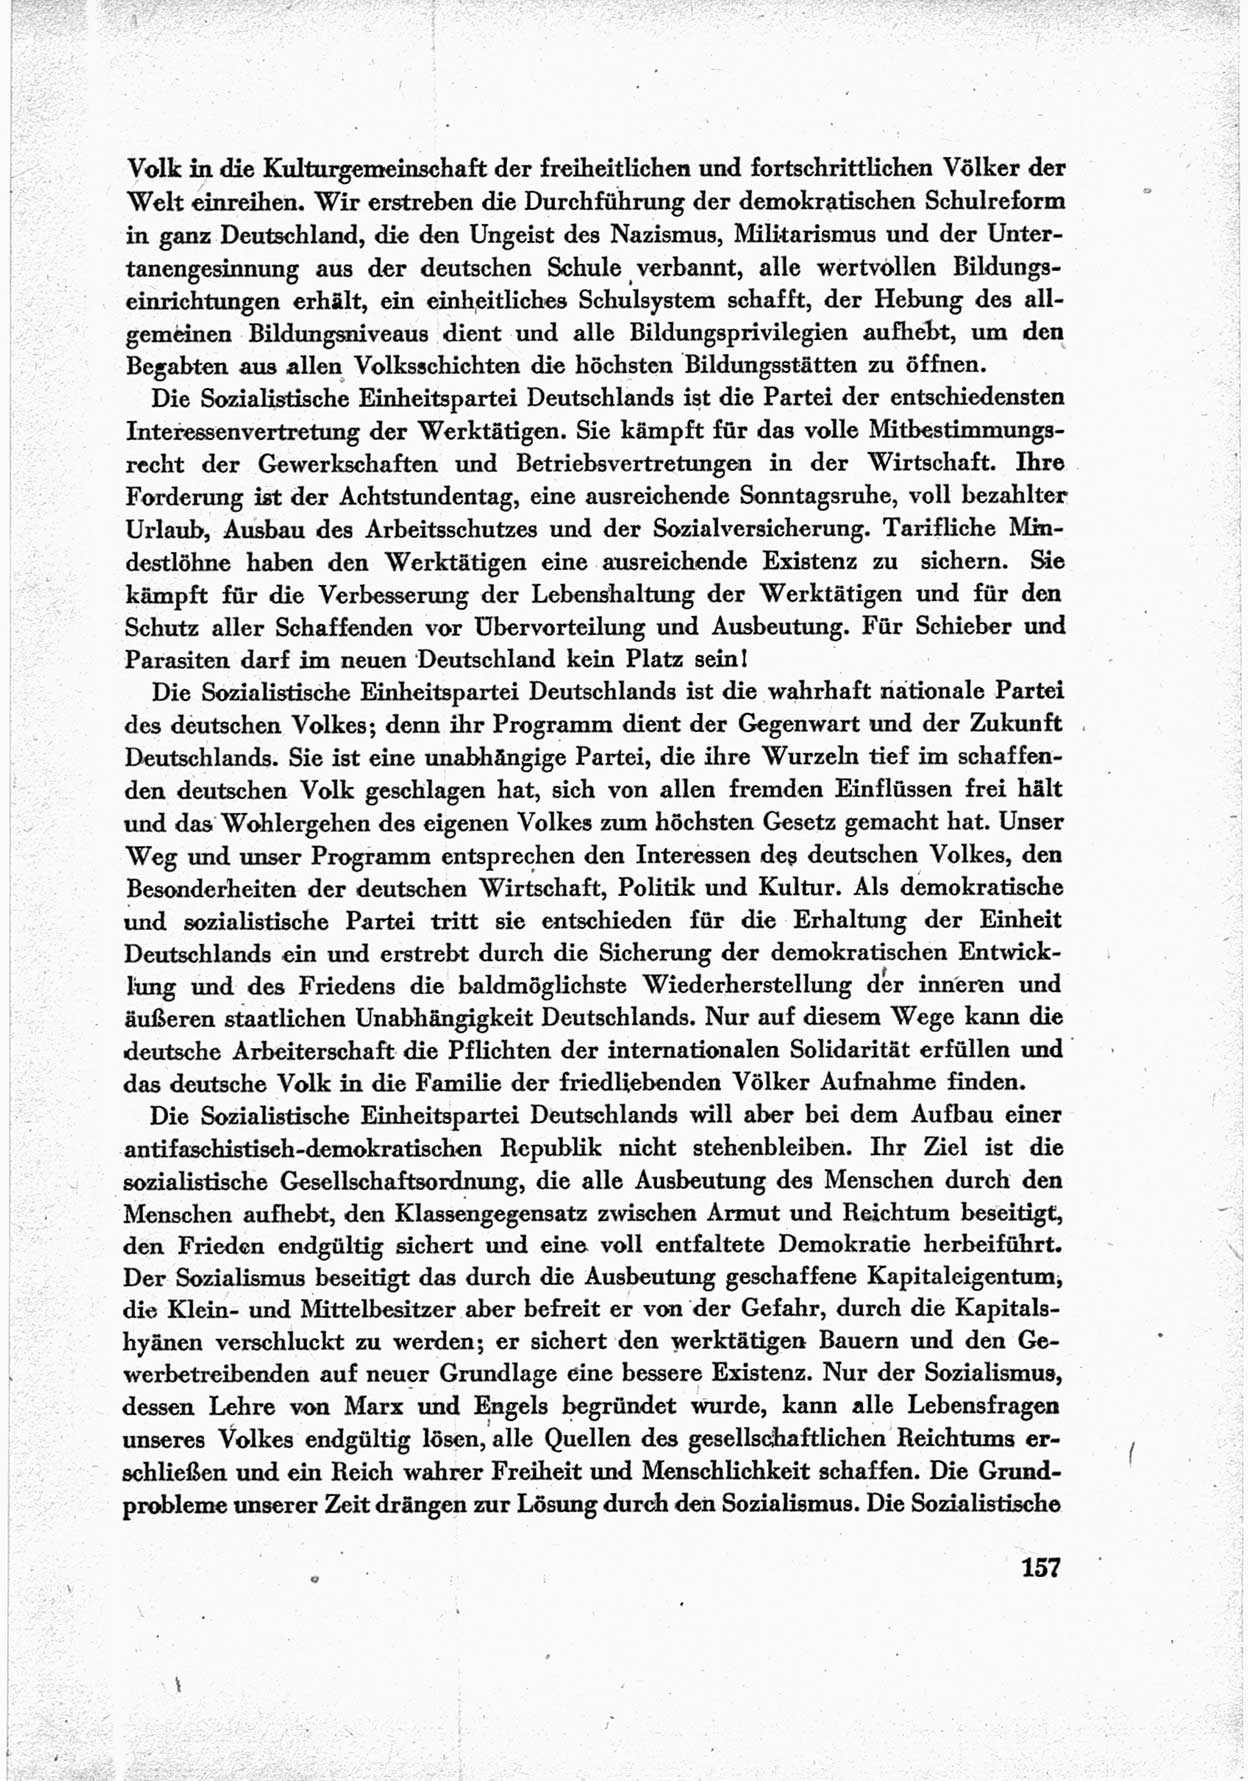 40. Parteitag der Sozialdemokratischen Partei Deutschlands (SPD) [Sowjetische Besatzungszone (SBZ) Deutschlands] am 19. und 20. April 1946 in Berlin, Seite 157 (40. PT SPD SBZ Dtl. 1946, S. 157)